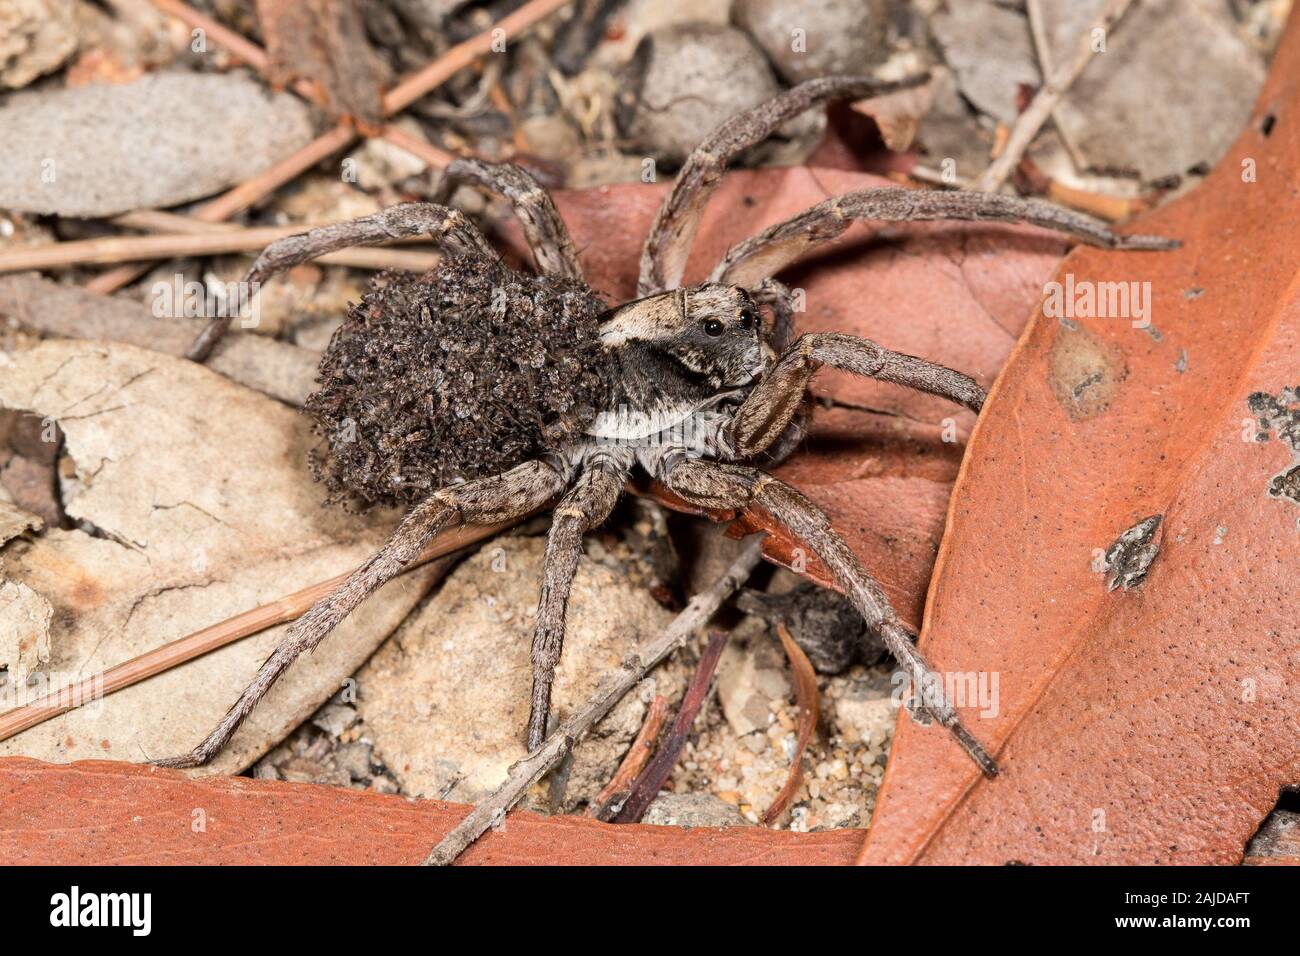 Wolf Spider Durchführung baby Spinnen auf dem Rücken Stockfotografie - Alamy